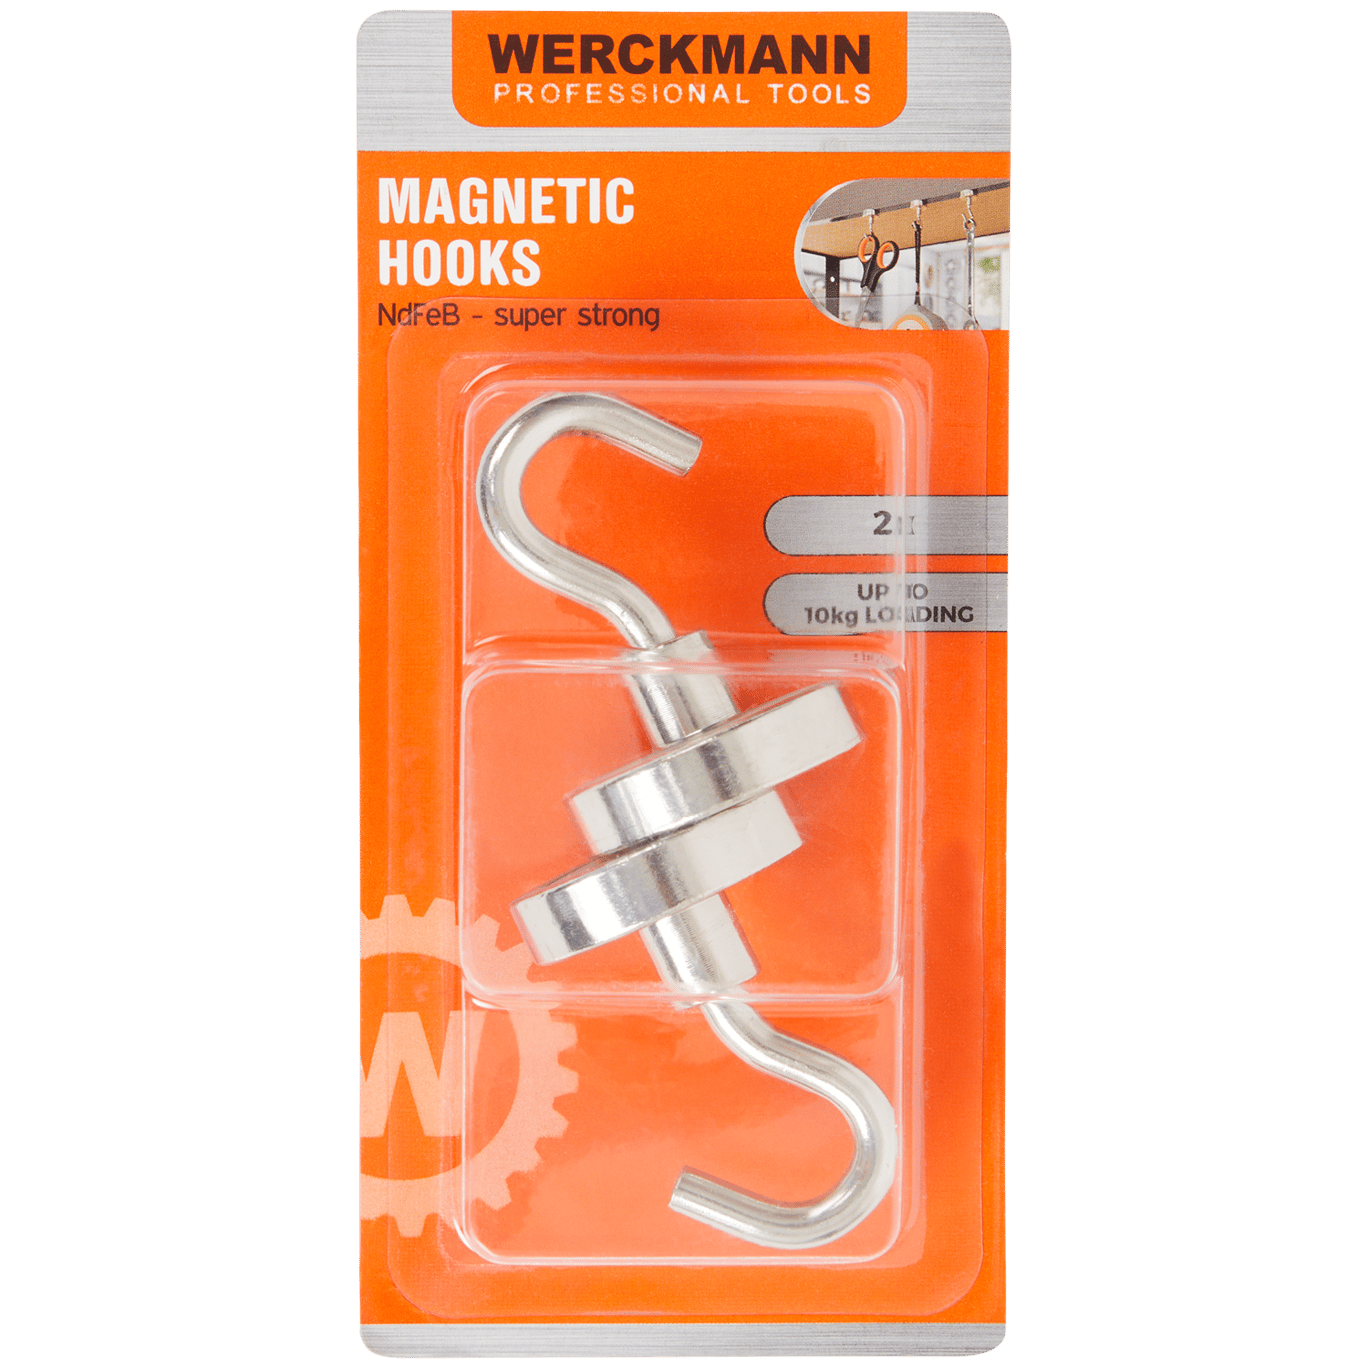 Crochets magnétiques Werckmann